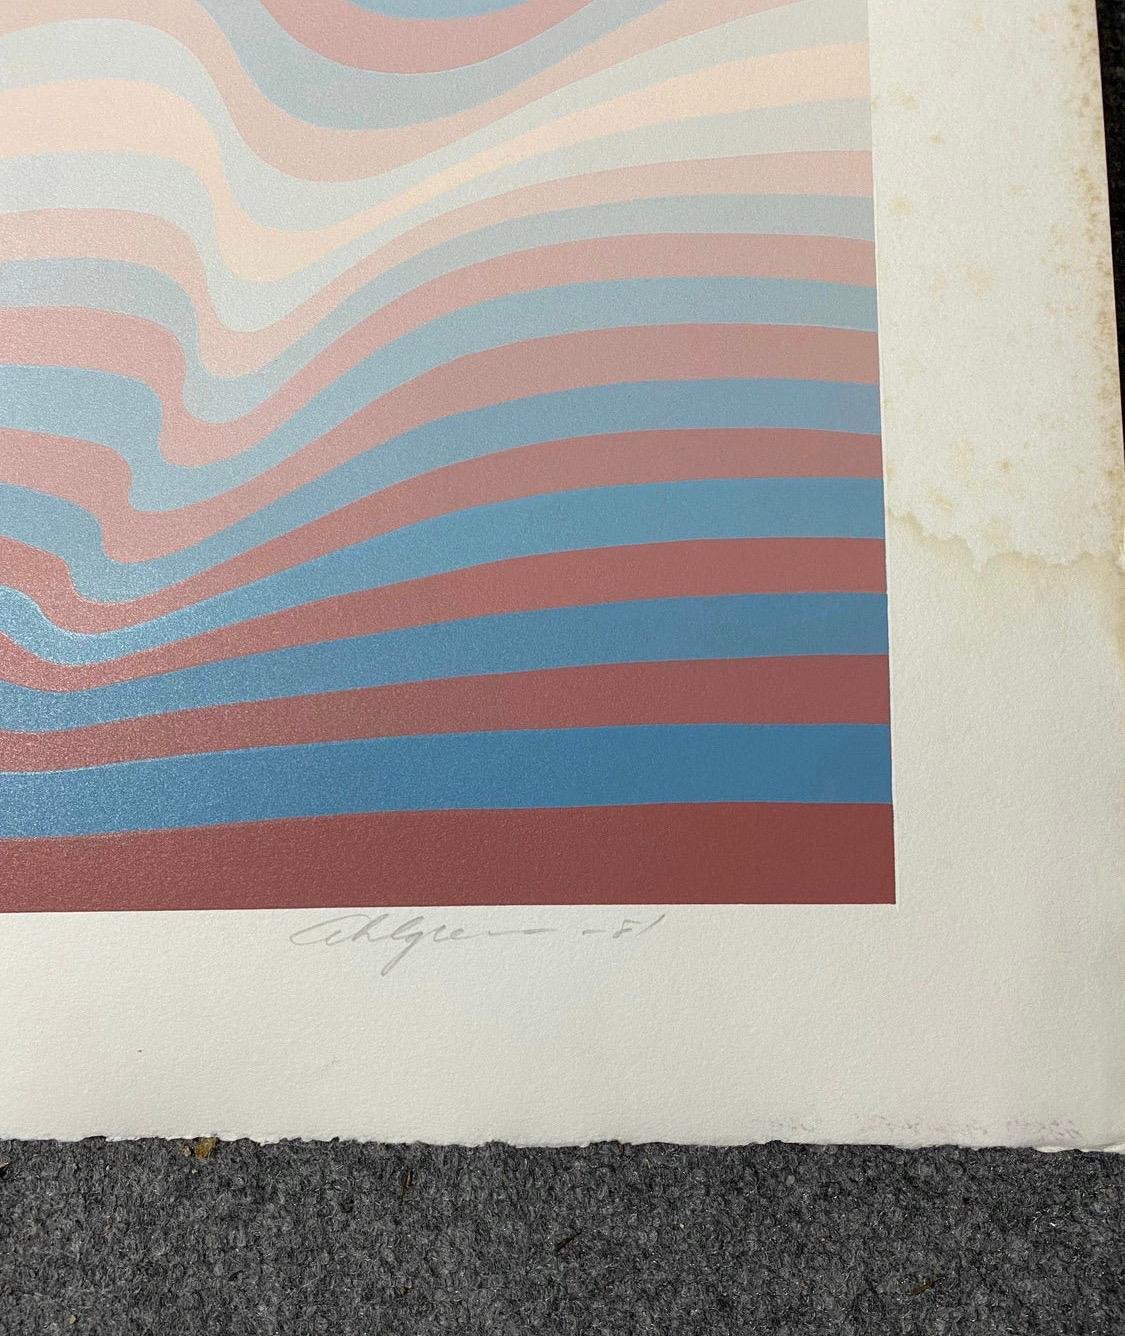 American 1981 Roy Ahlgren “Big Sur” Op Art Serigraph For Sale